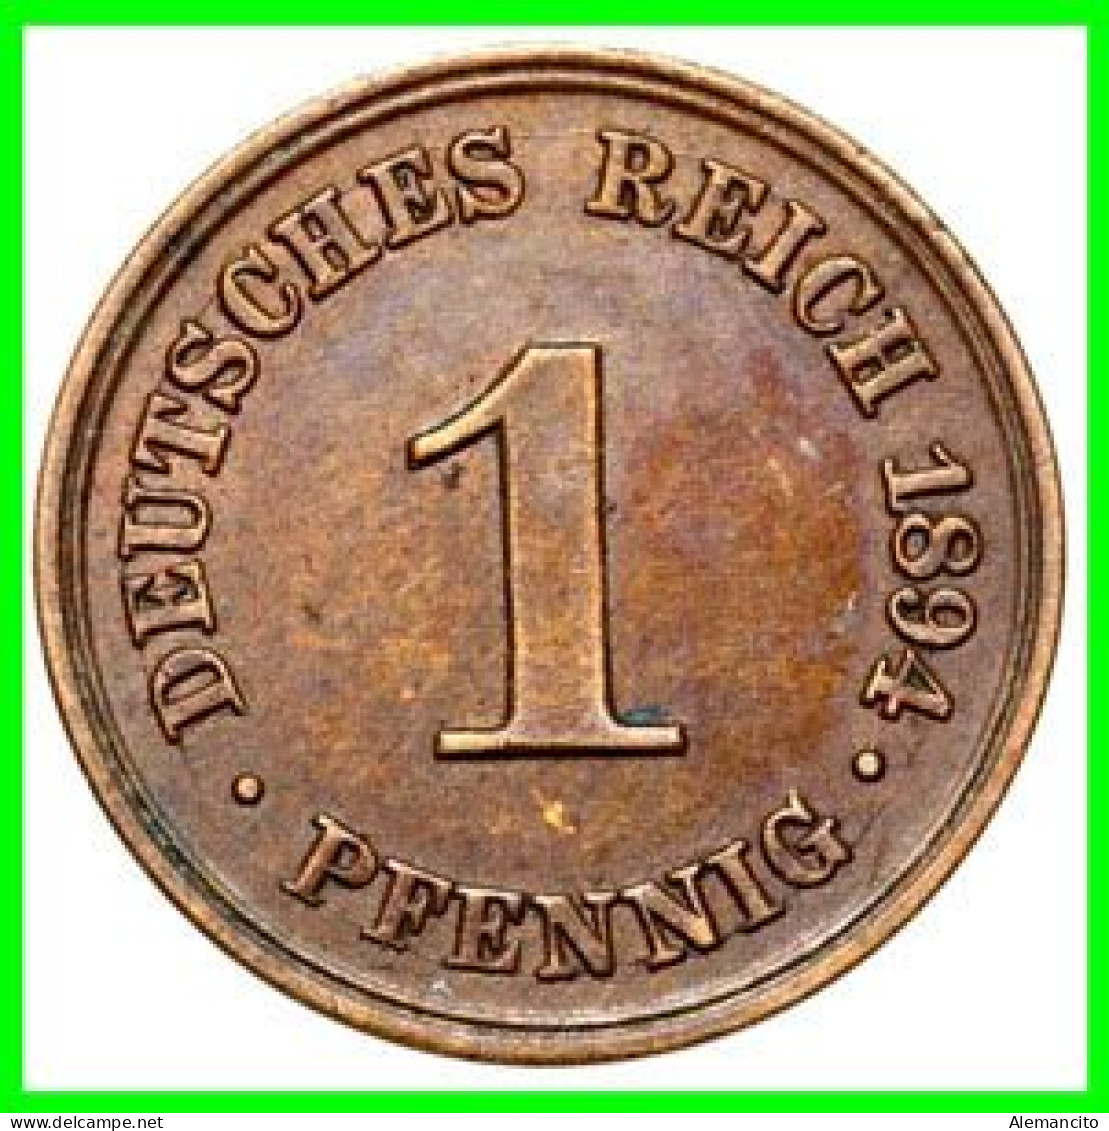 ALEMANIA – GERMANY - IMPERIO MONEDA DE COBRE DIAMETRO 17.5 Mm. DEL AÑO 1894 – CECA-D- KM-1  GOBERNANTE: WILHELM II - 1 Pfennig